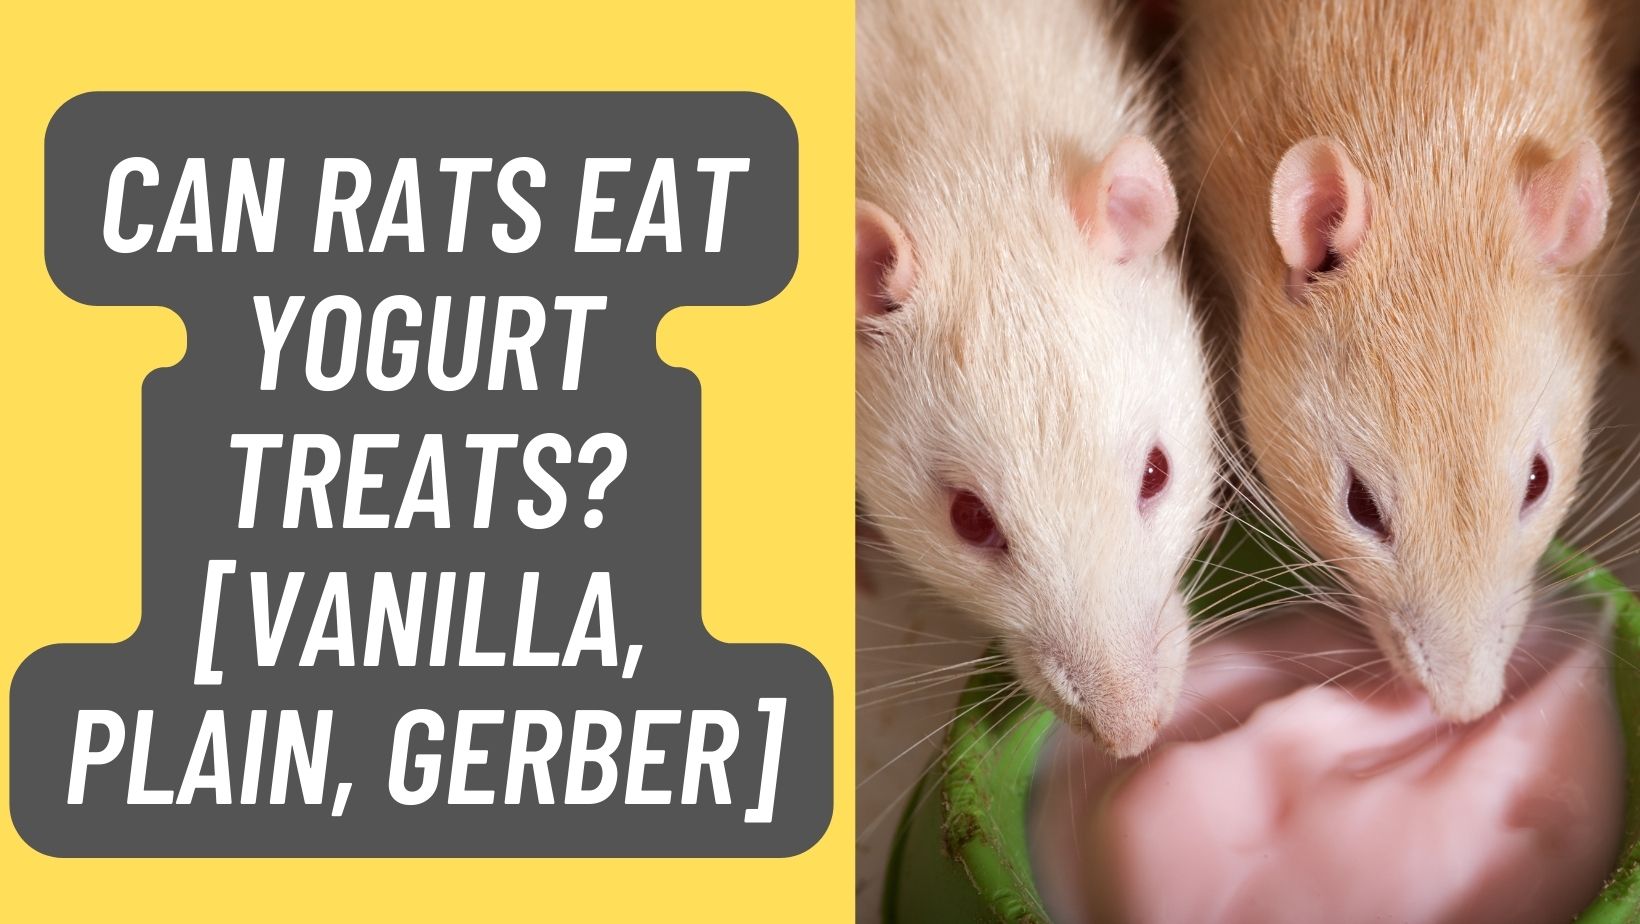 Can Rats Eat Yogurt Treats? [Vanilla, Plain, Gerber] – Learn More